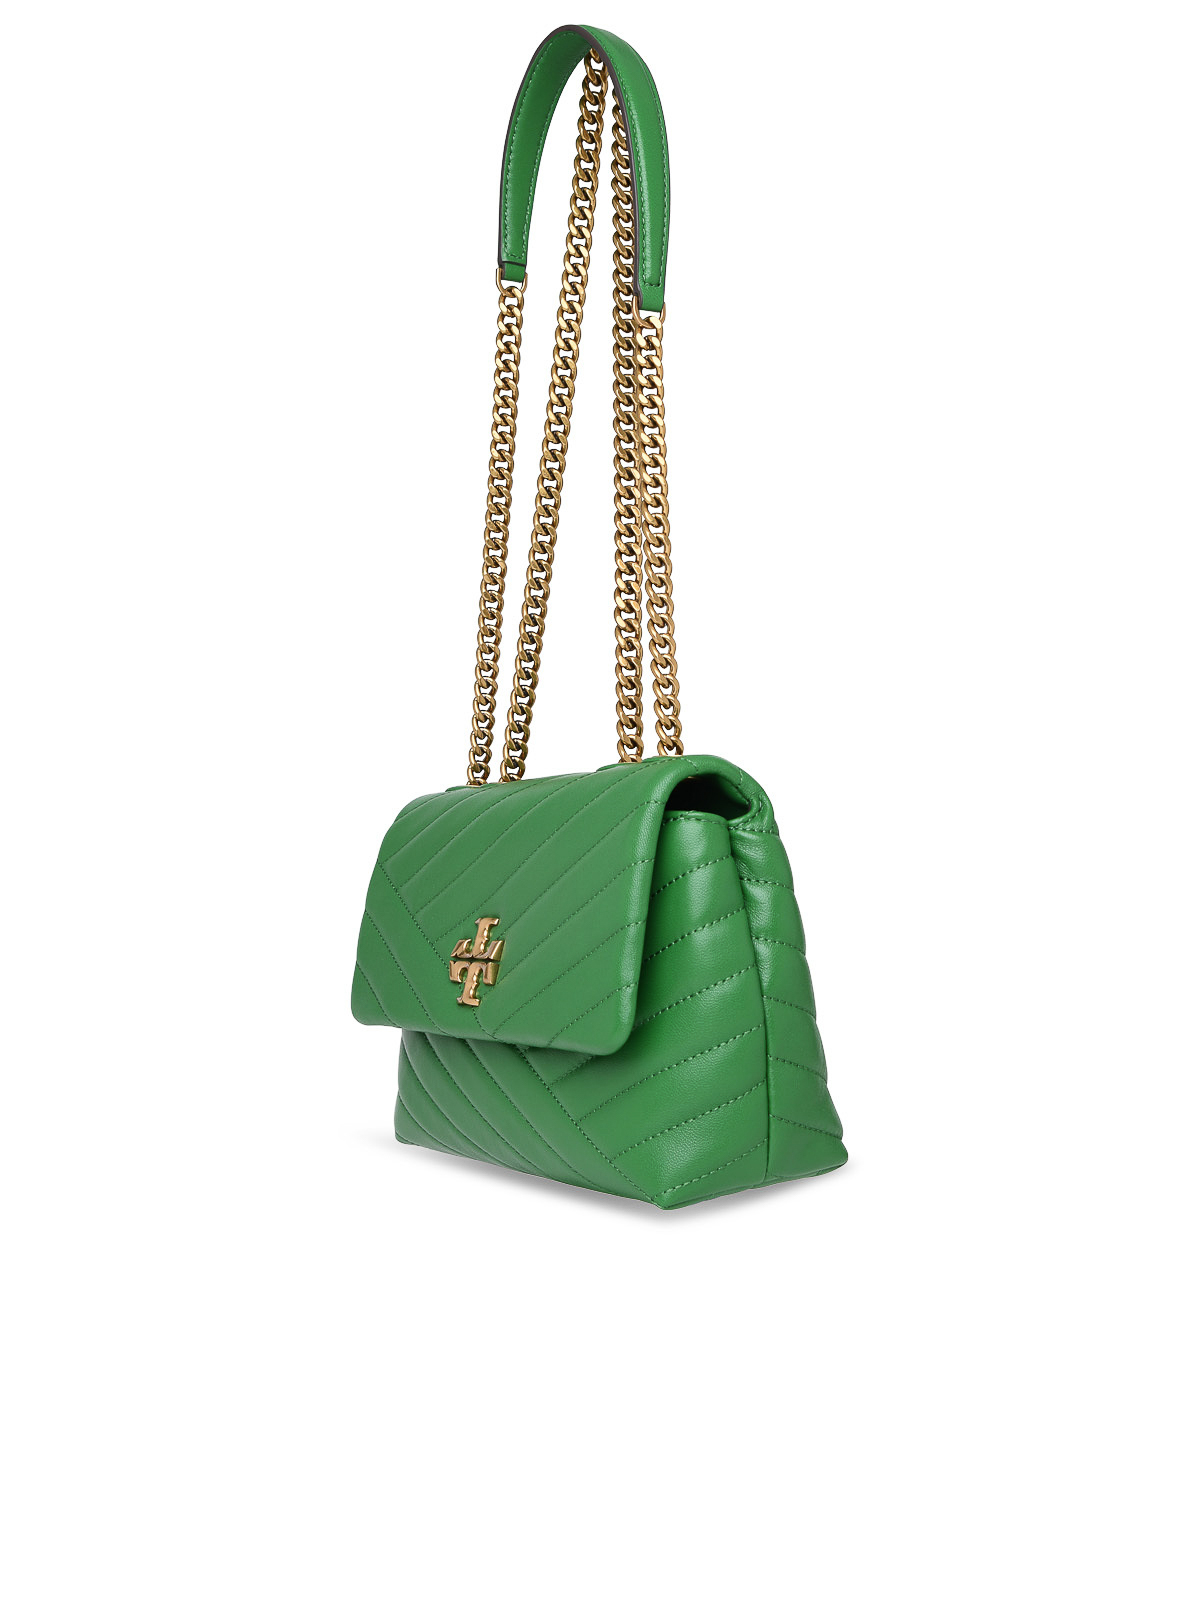 Tory Burch Green Bag SOLD - Charlotte B Closet